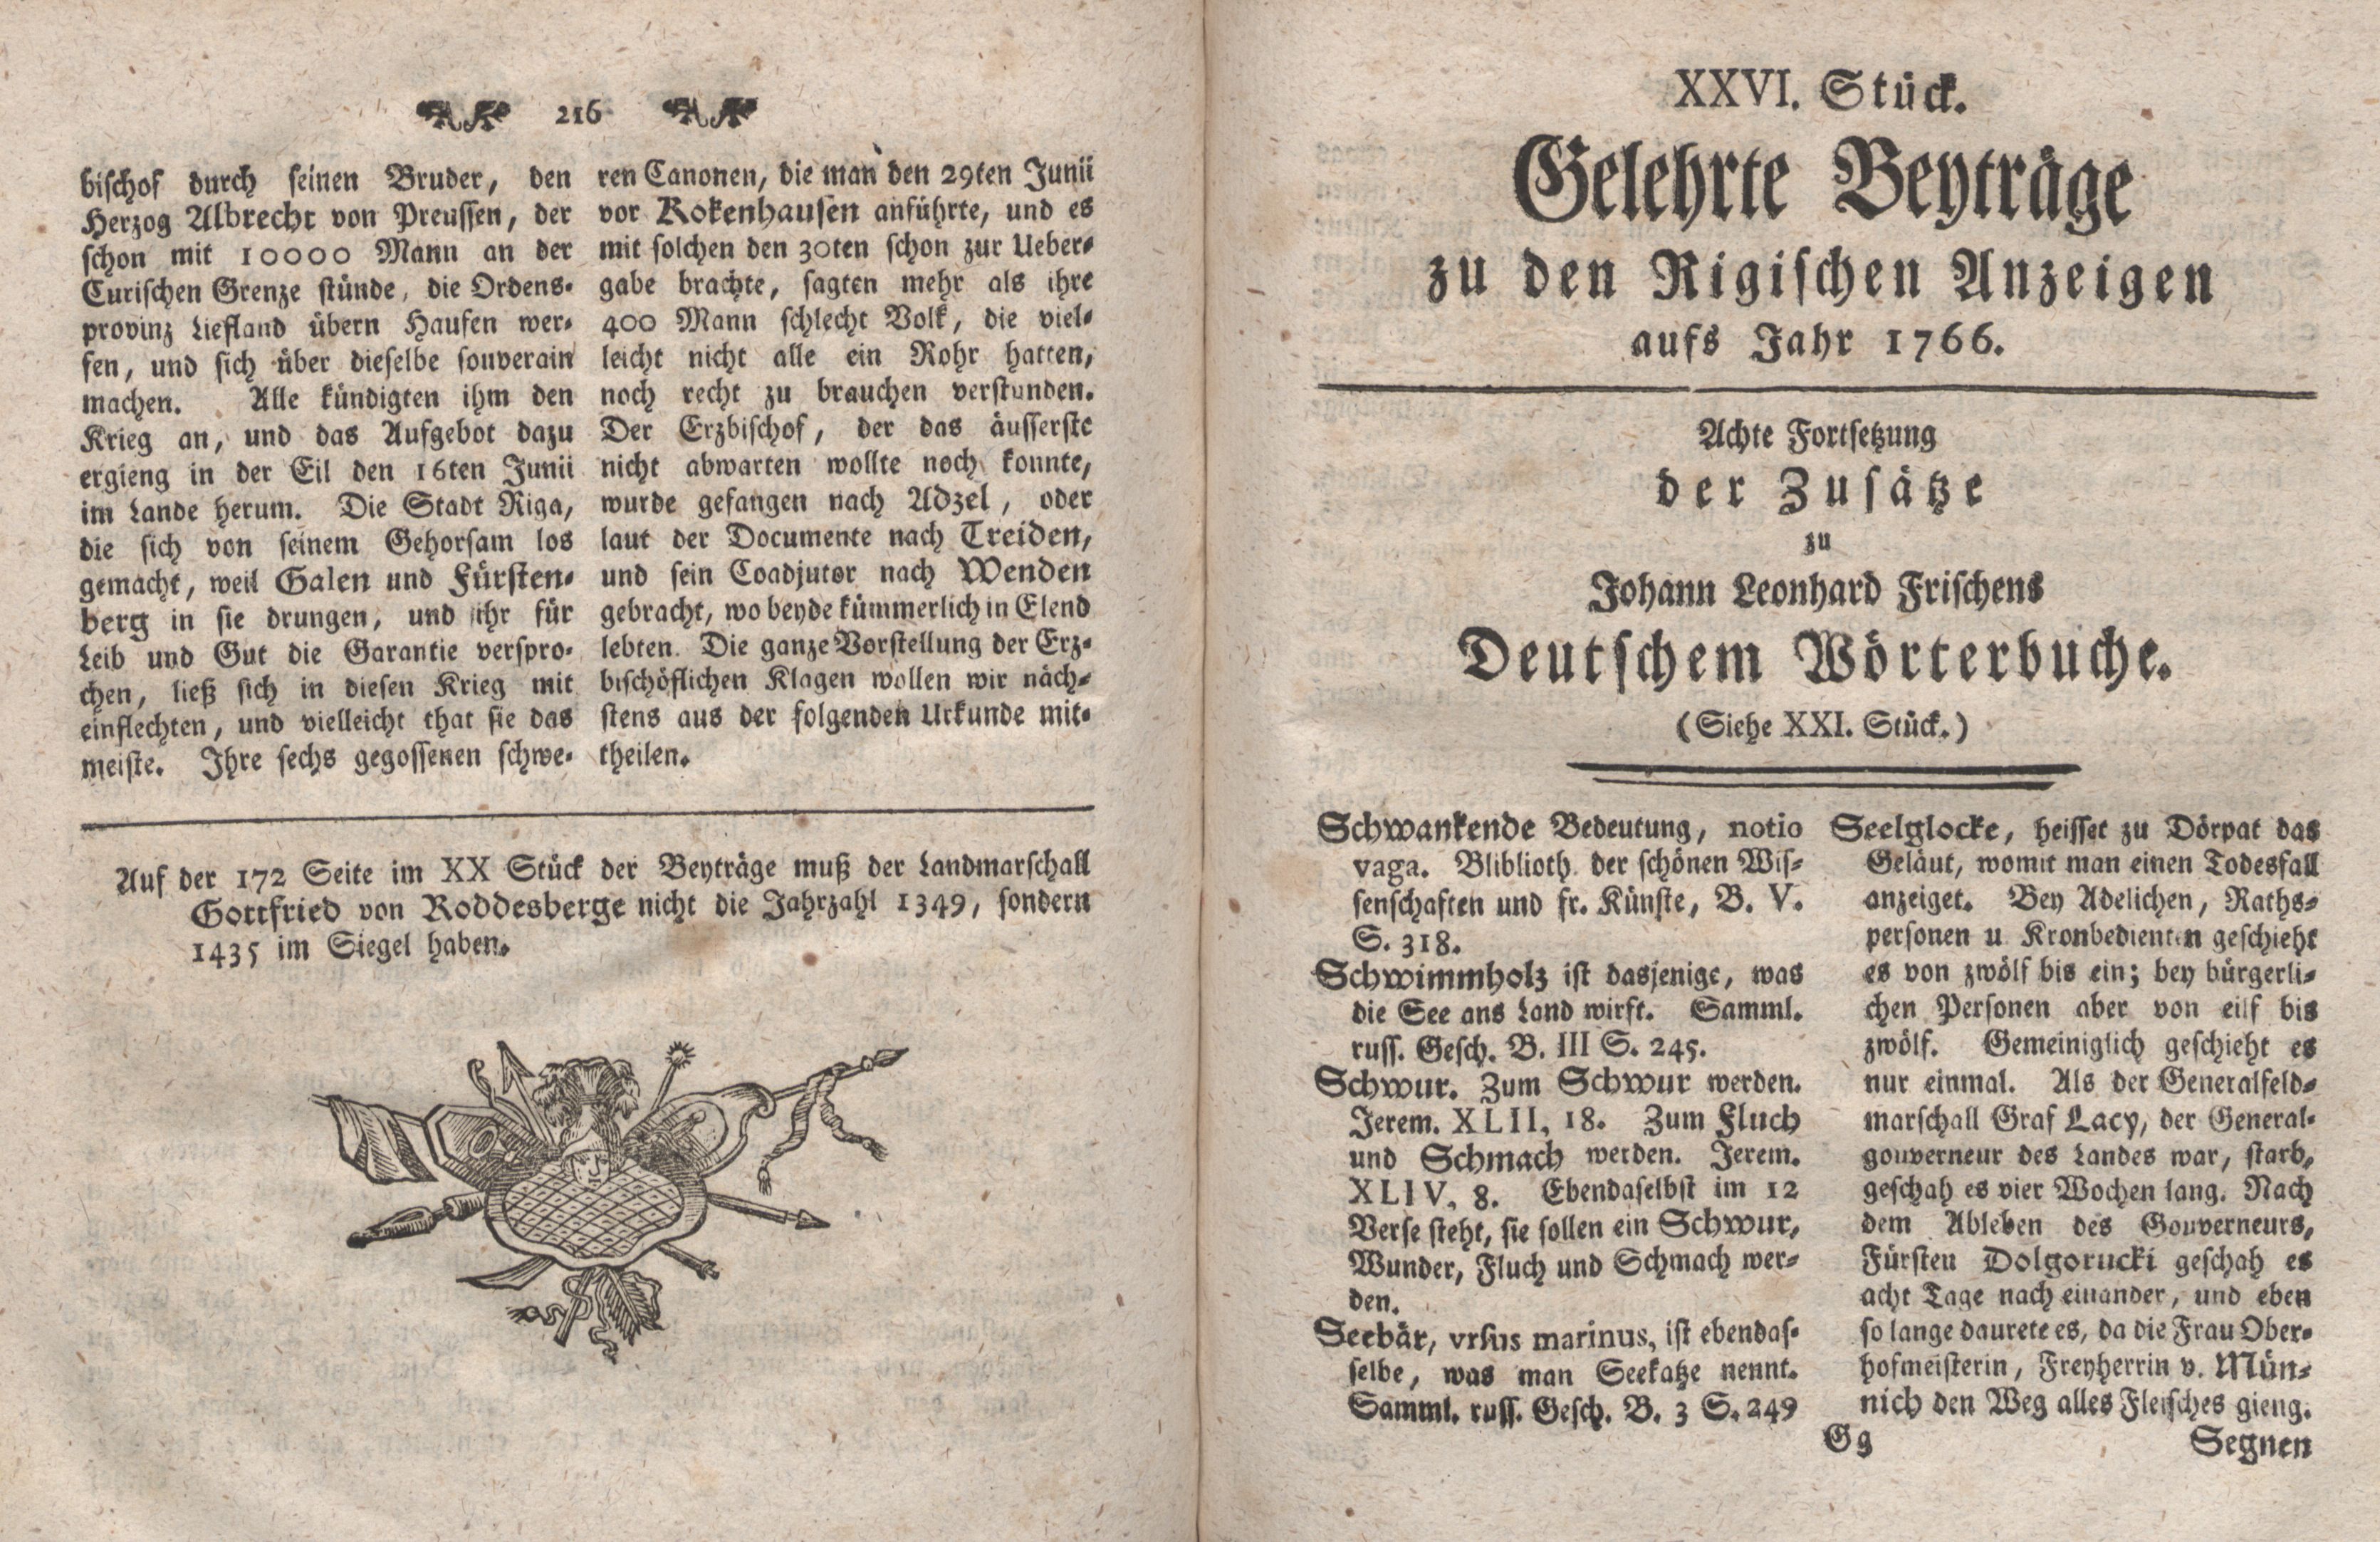 Gelehrte Beyträge zu den Rigischen Anzeigen 1766 (1766) | 109. (216-217) Main body of text